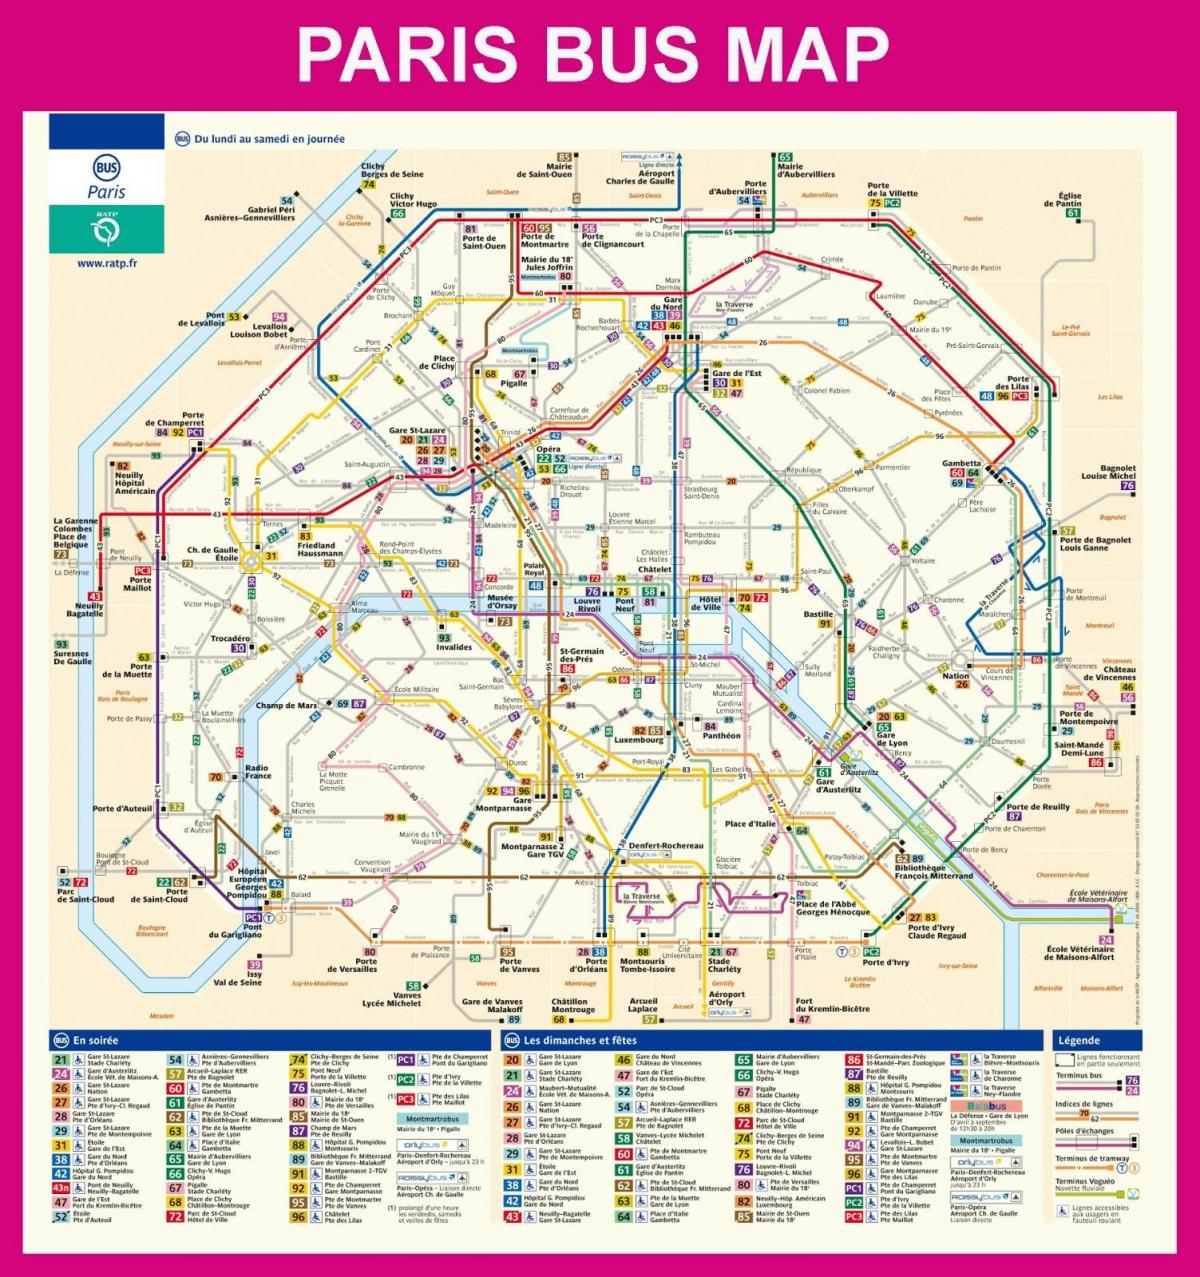 Paris metro bus map - Paris France bus map (Île-de-France - France)